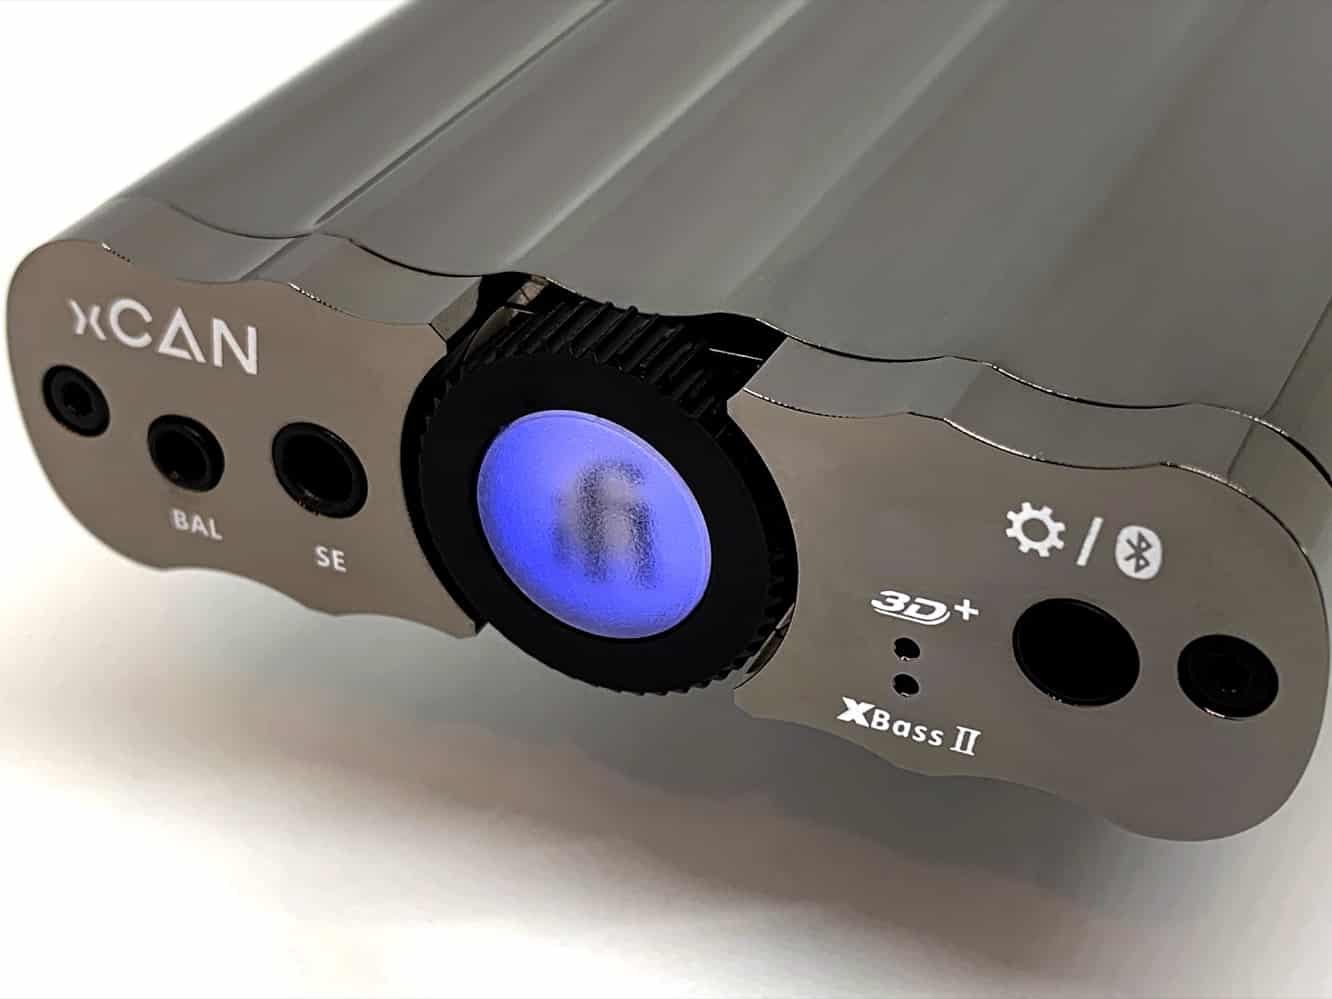 รีวิว: iFi xCAN Headphone Amplifier